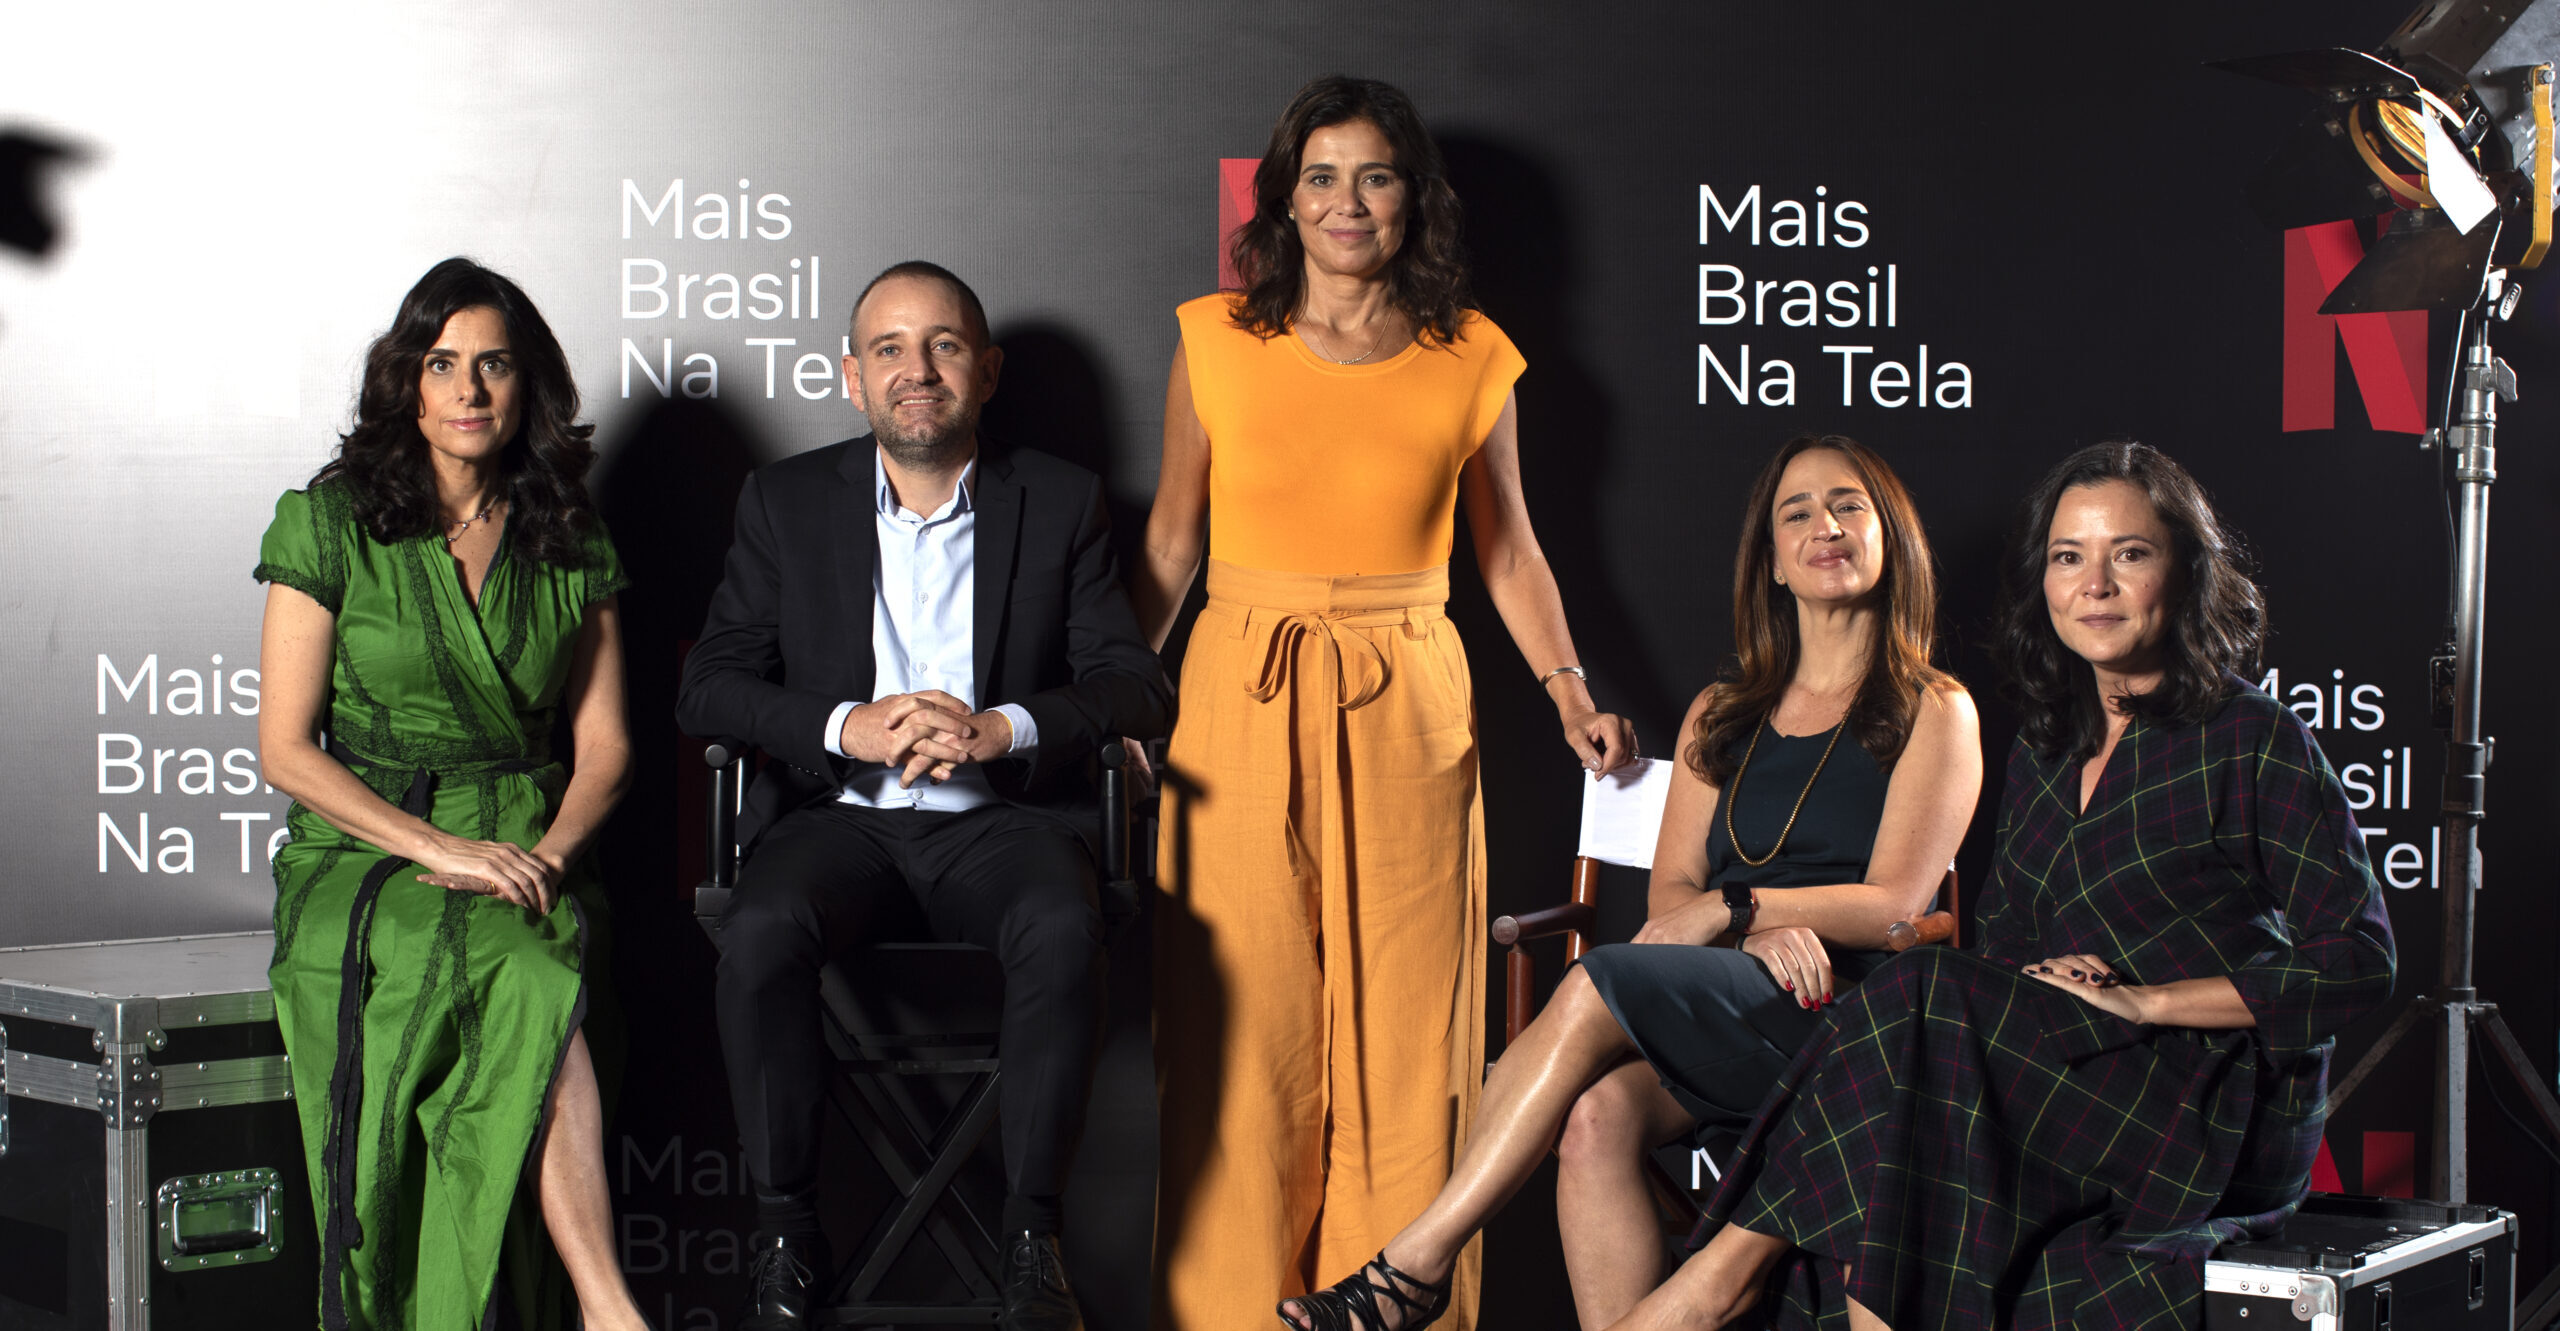 Netflix anuncia série brasileira 'Olhar indiscreto', com estreia em 2022